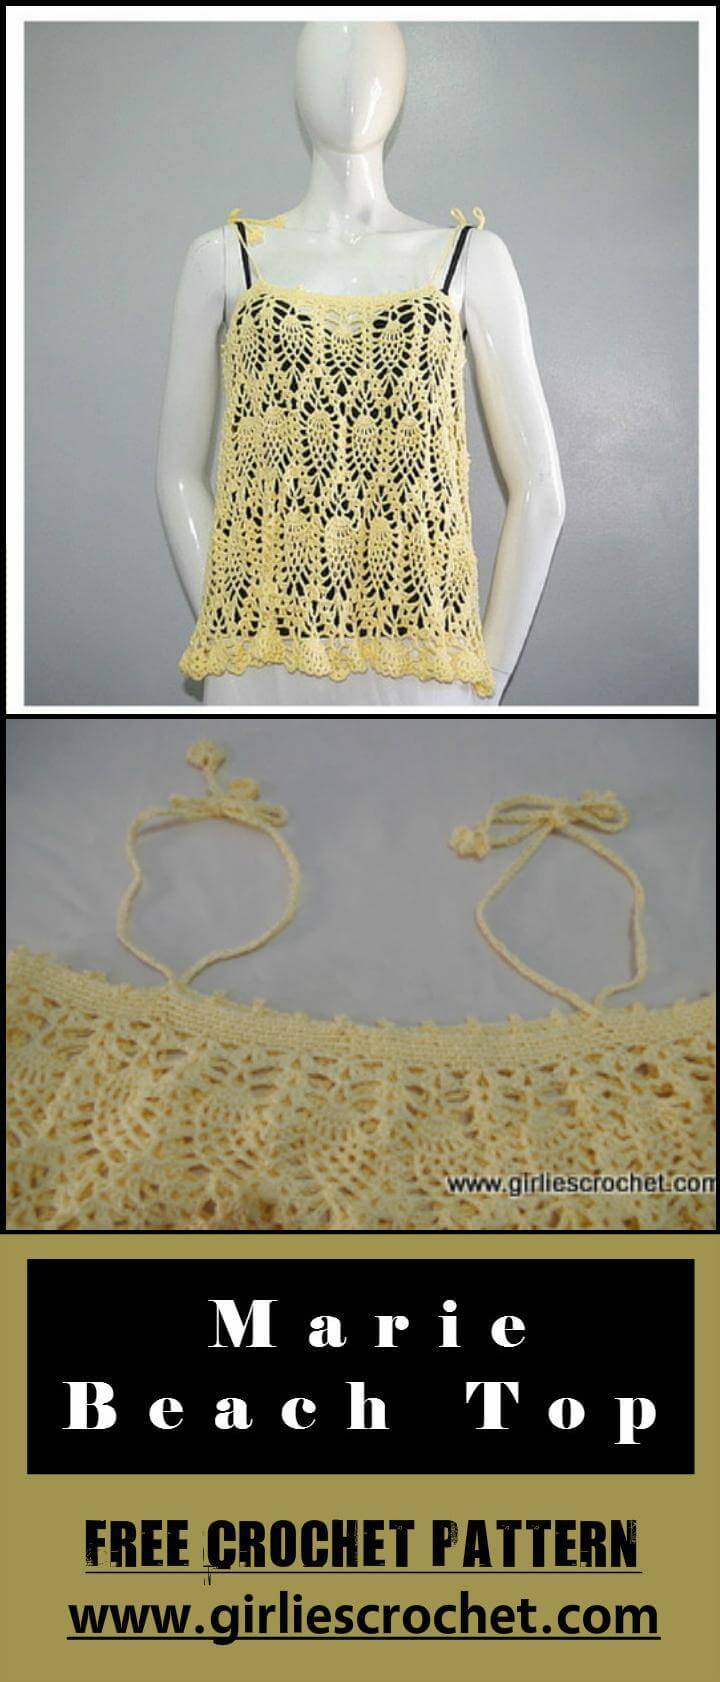 Marie Beach Top Free Crochet Pattern